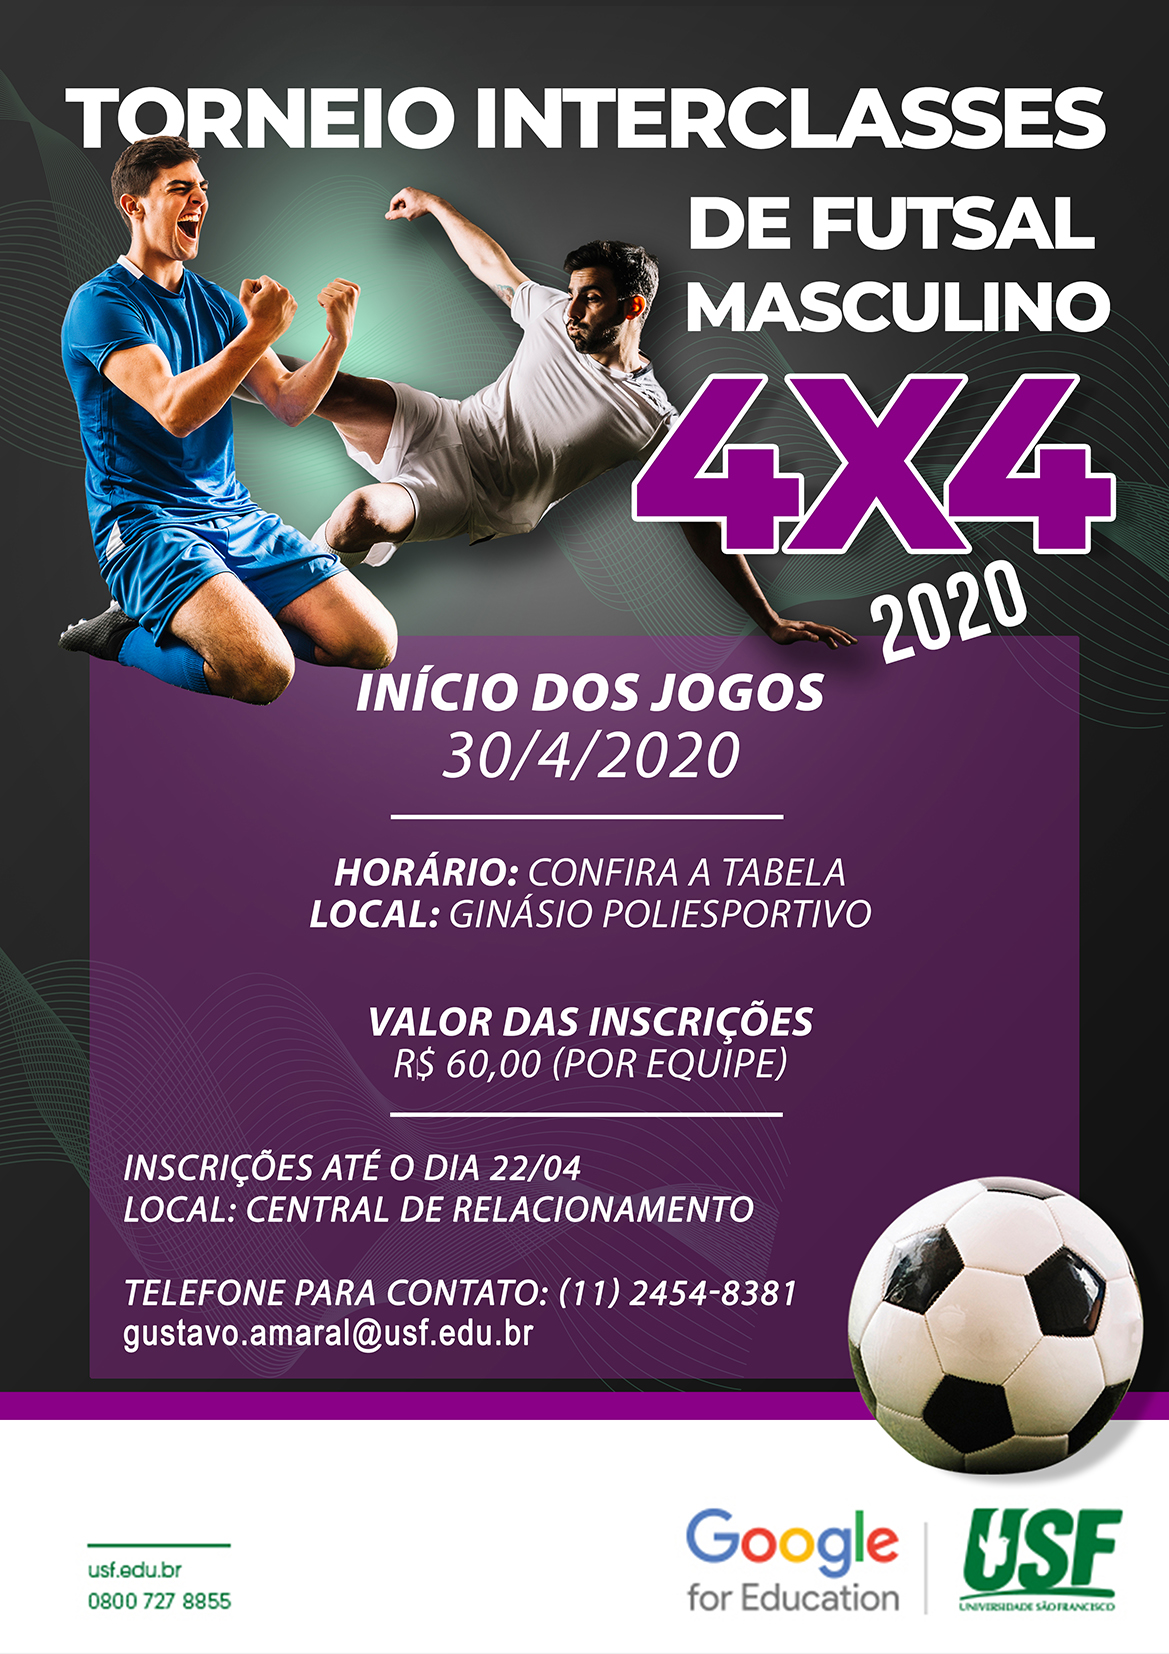 Torneio “INTERCLASSES” de Futsal Masculino 4x4